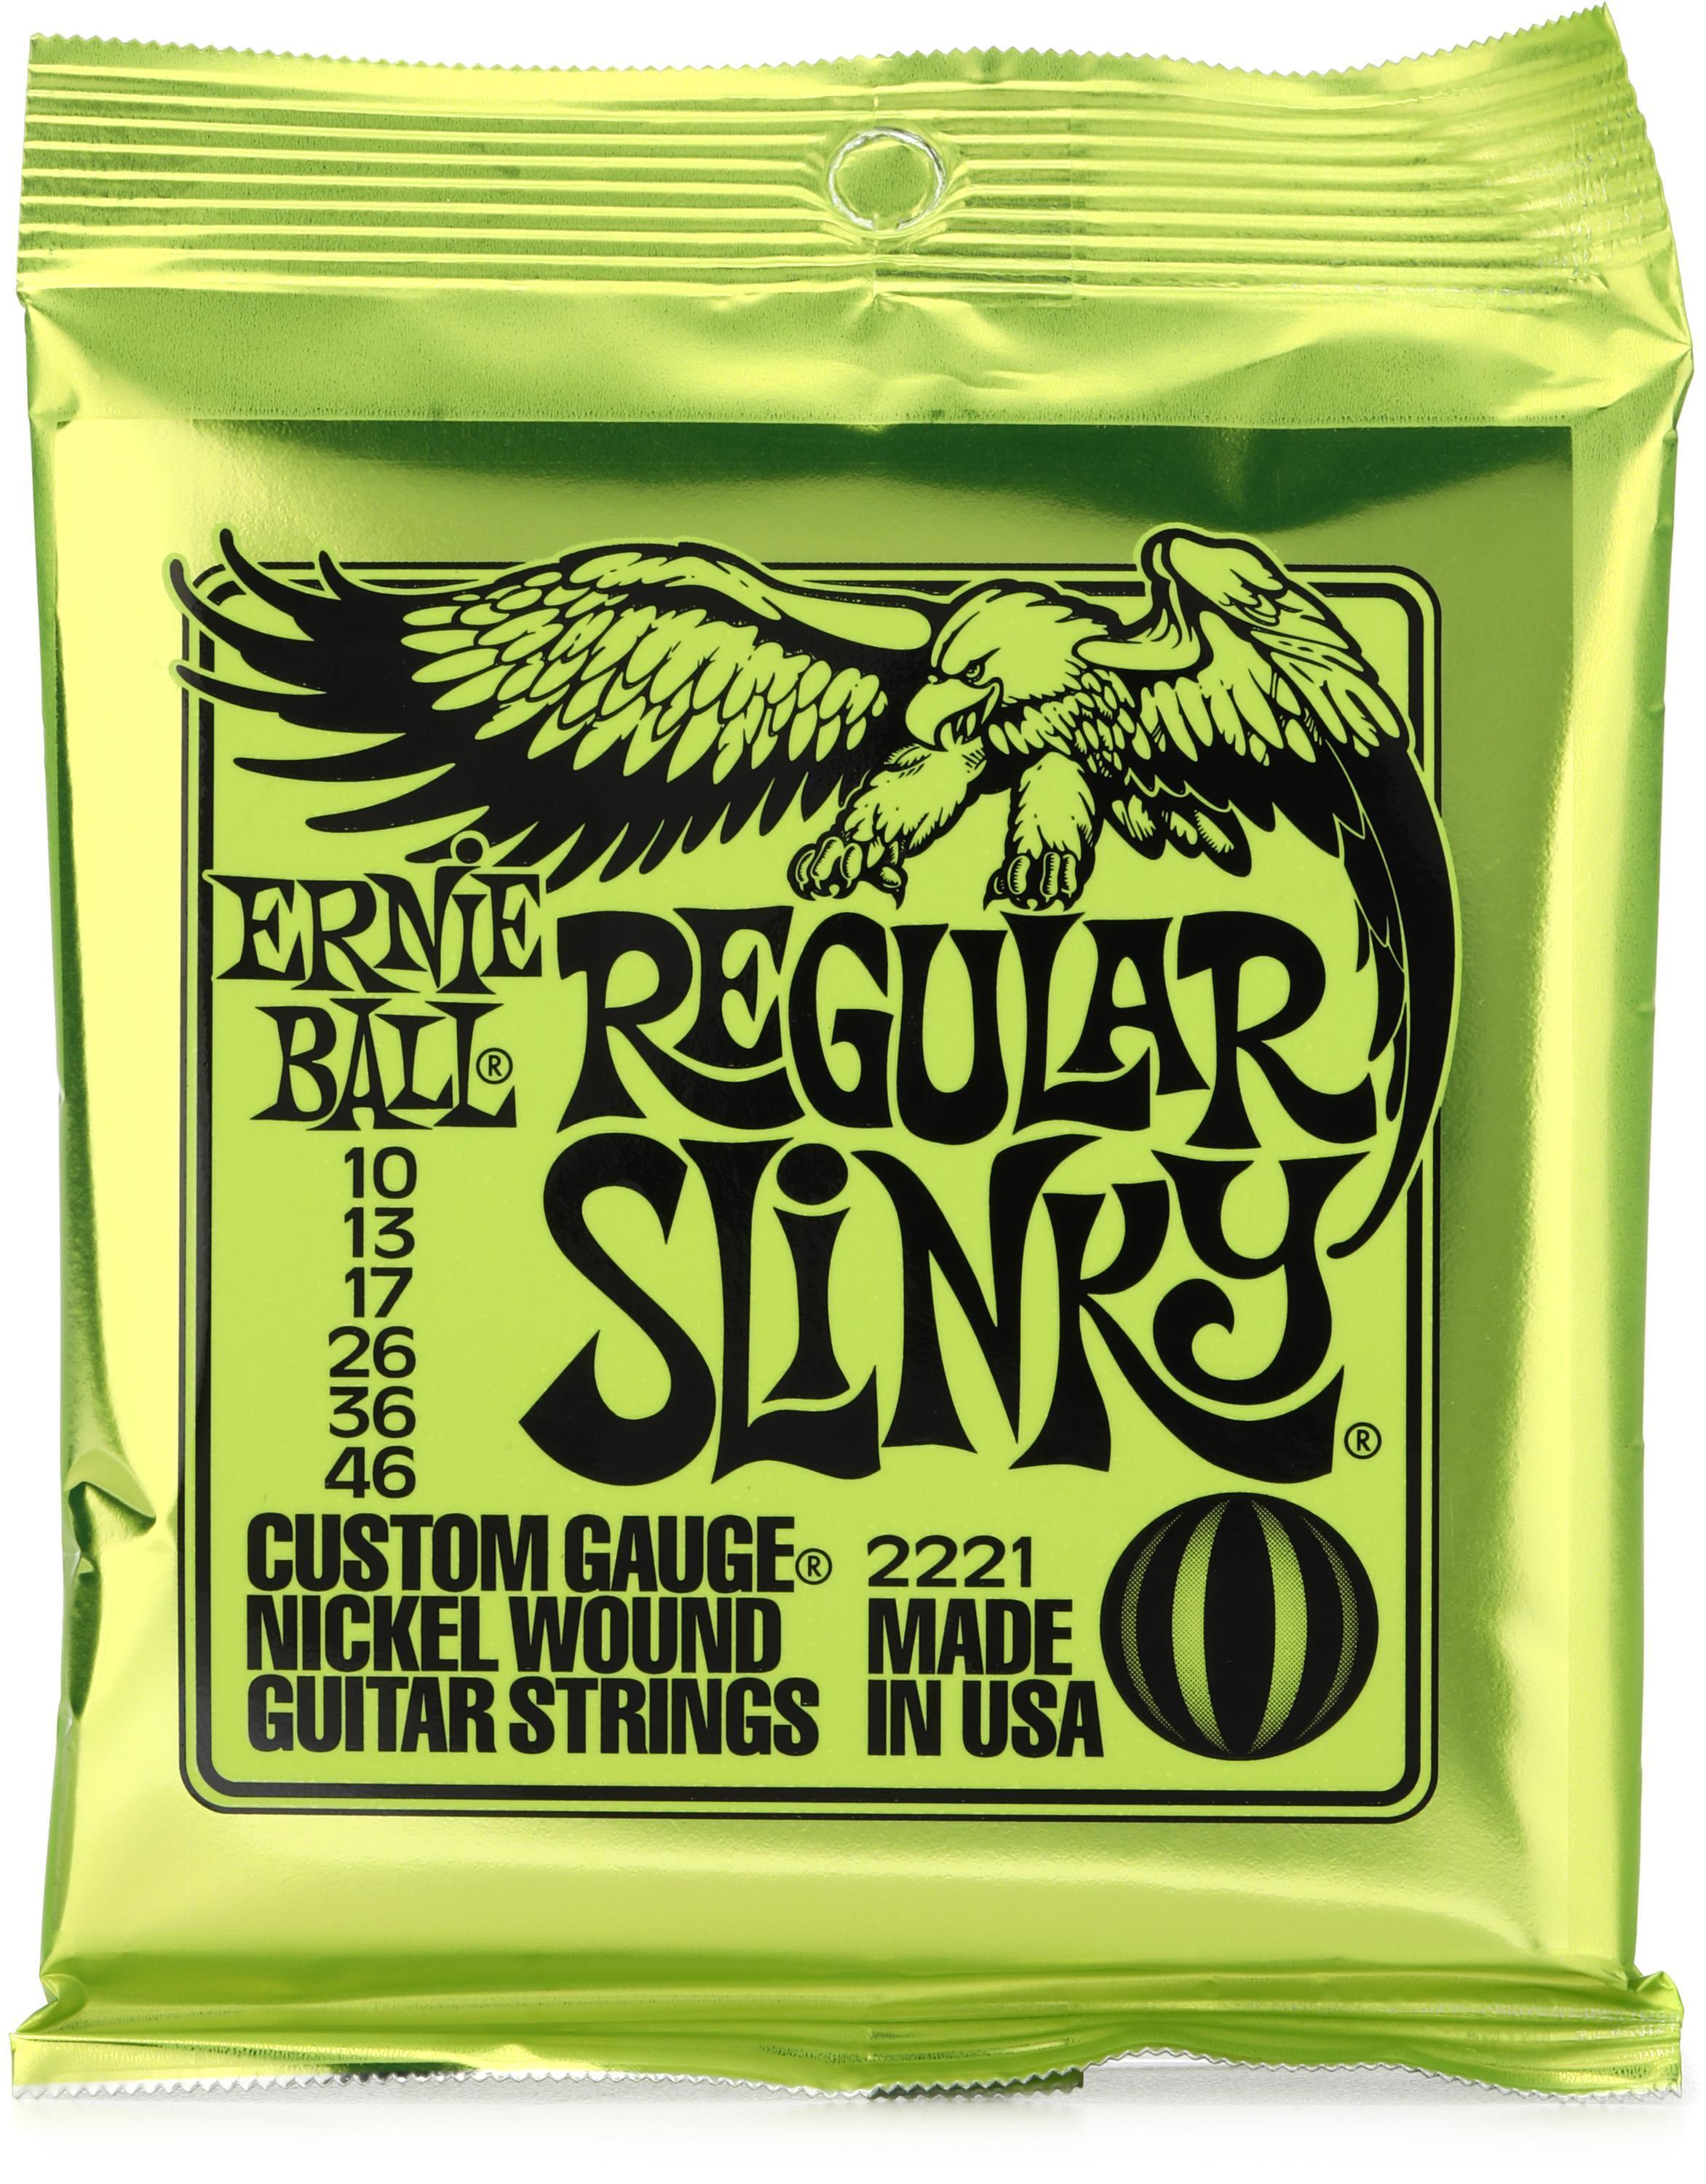 Bundled Item: Ernie Ball 2221 Regular Slinky Nickel Wound Electric Guitar Strings - .010-.046